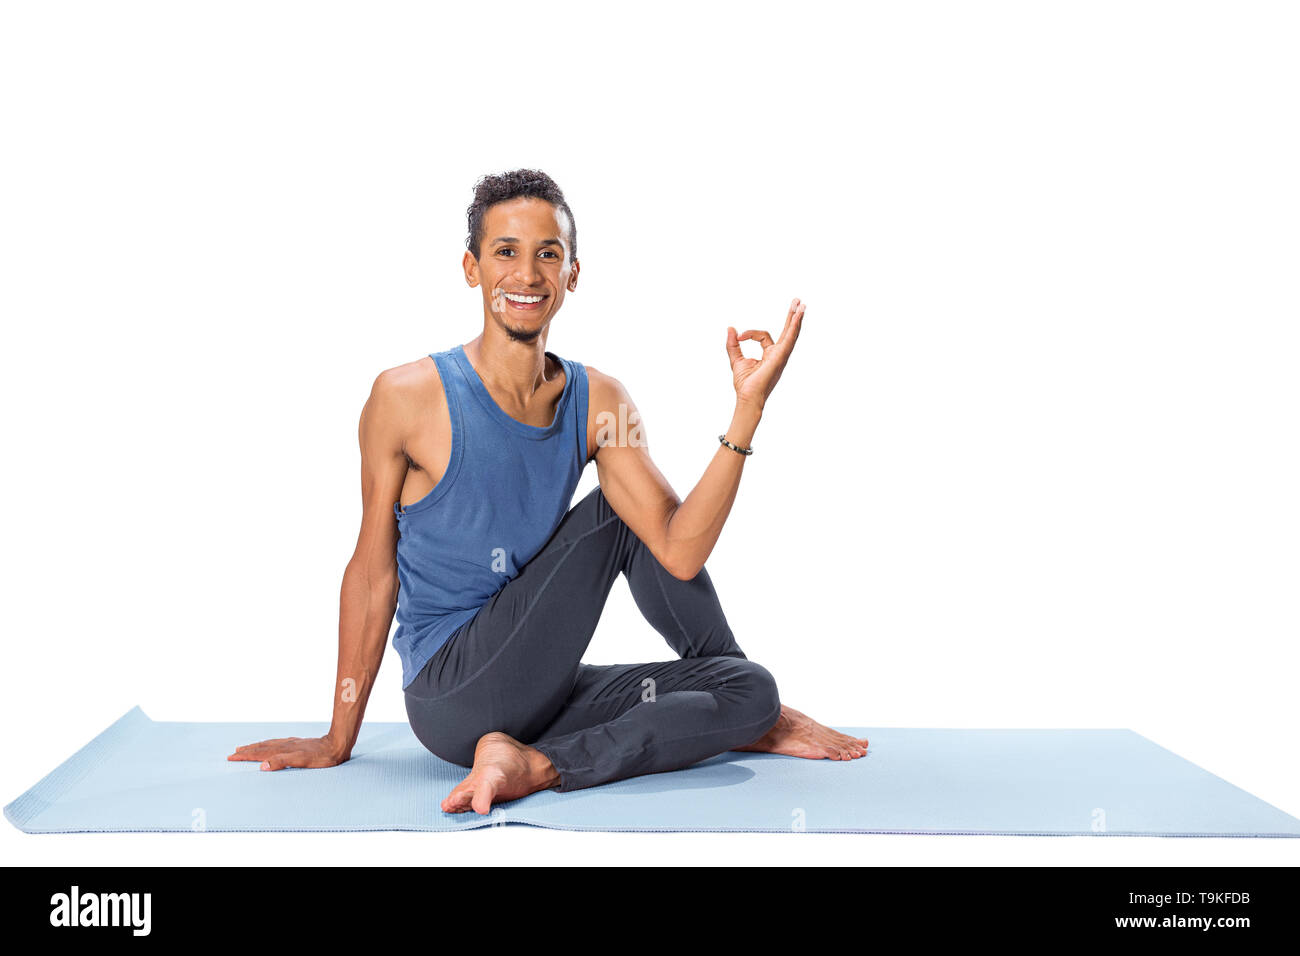 Young man doing yoga asana poses exercise studio photo isolated on white background Stock Photo